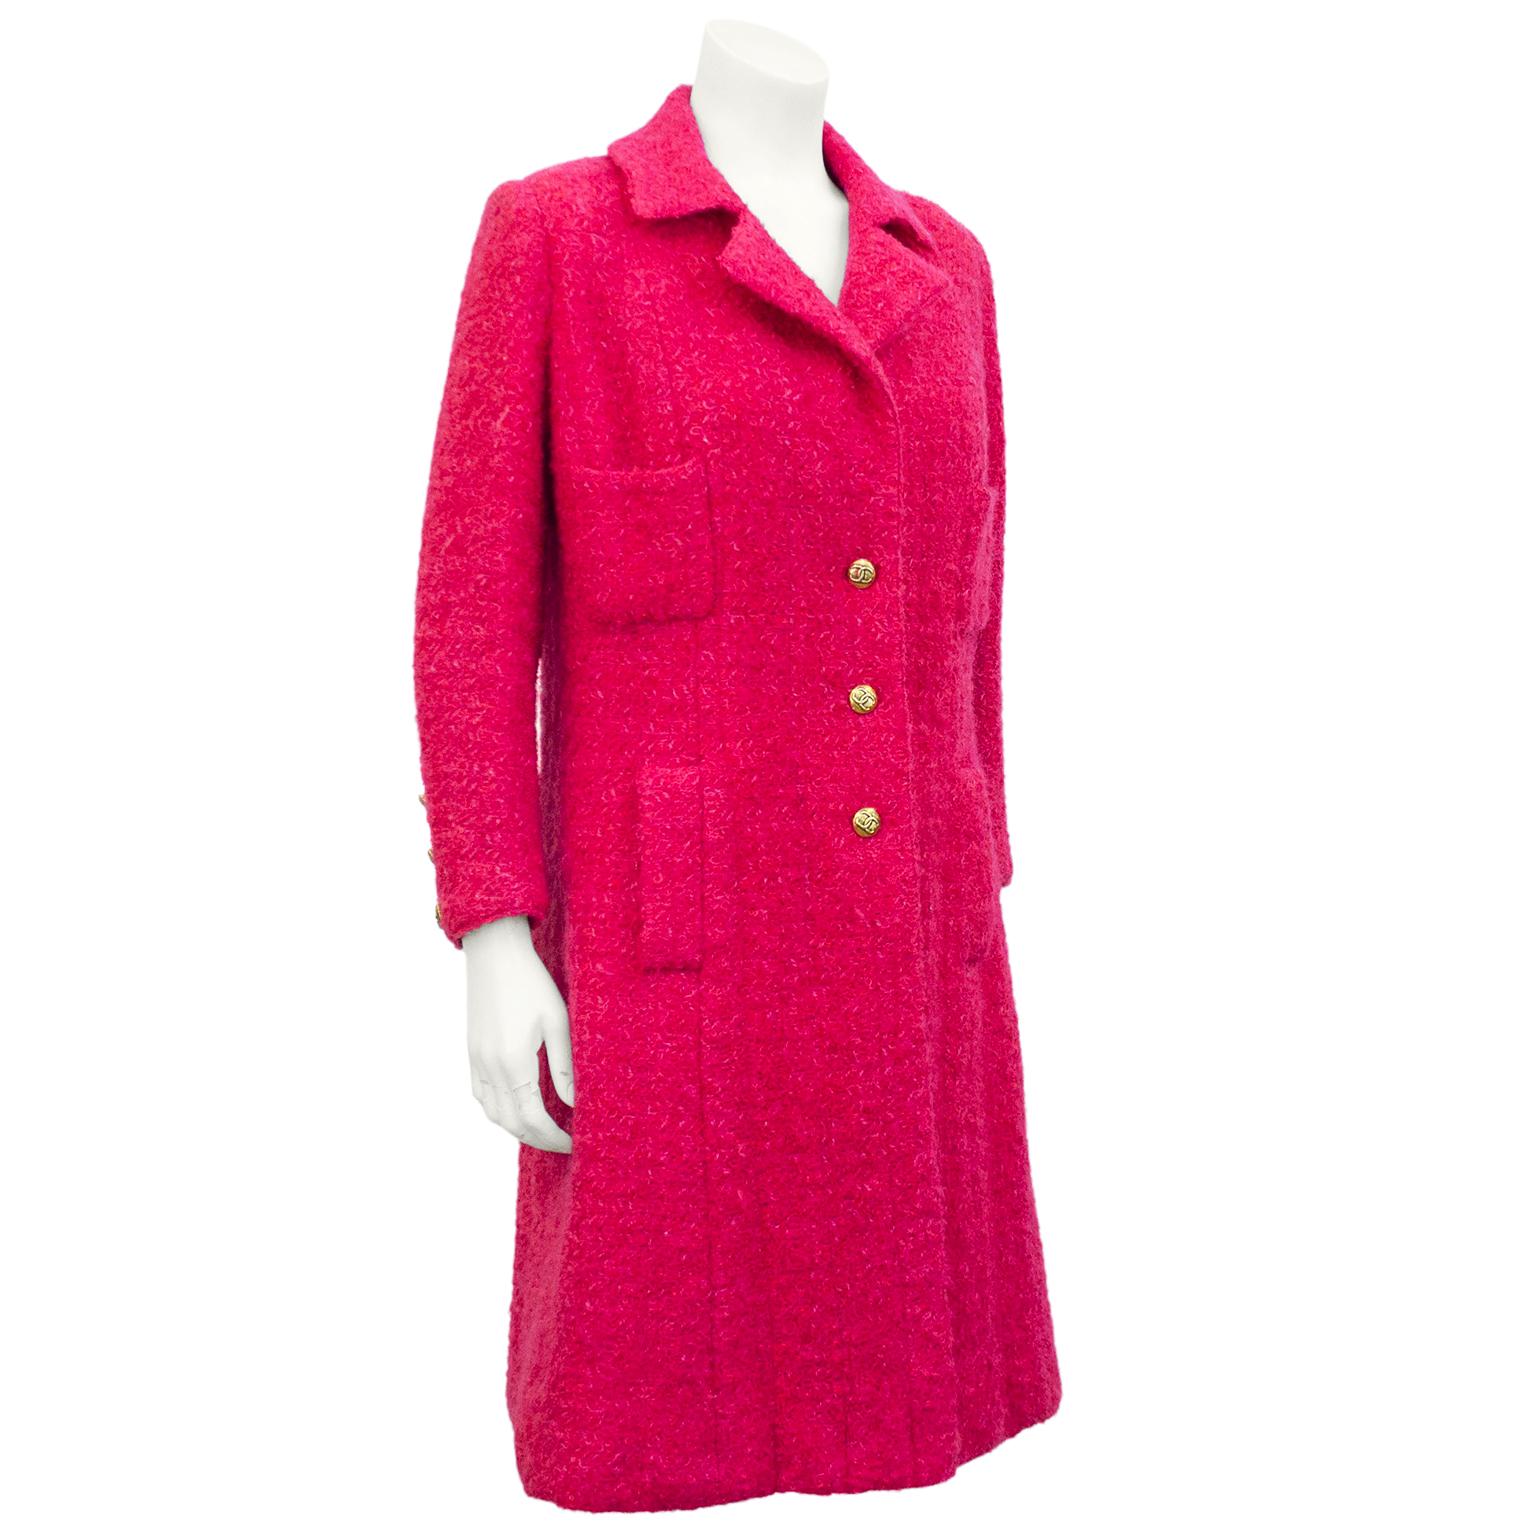 Superbe robe manteau en laine bouclée framboise Chanel haute couture du milieu des années 1970. Silhouette classique à simple boutonnage avec 2 poches plaquées sur le haut du corsage et 2 poches sur les hanches avec brides. Entièrement doublée de